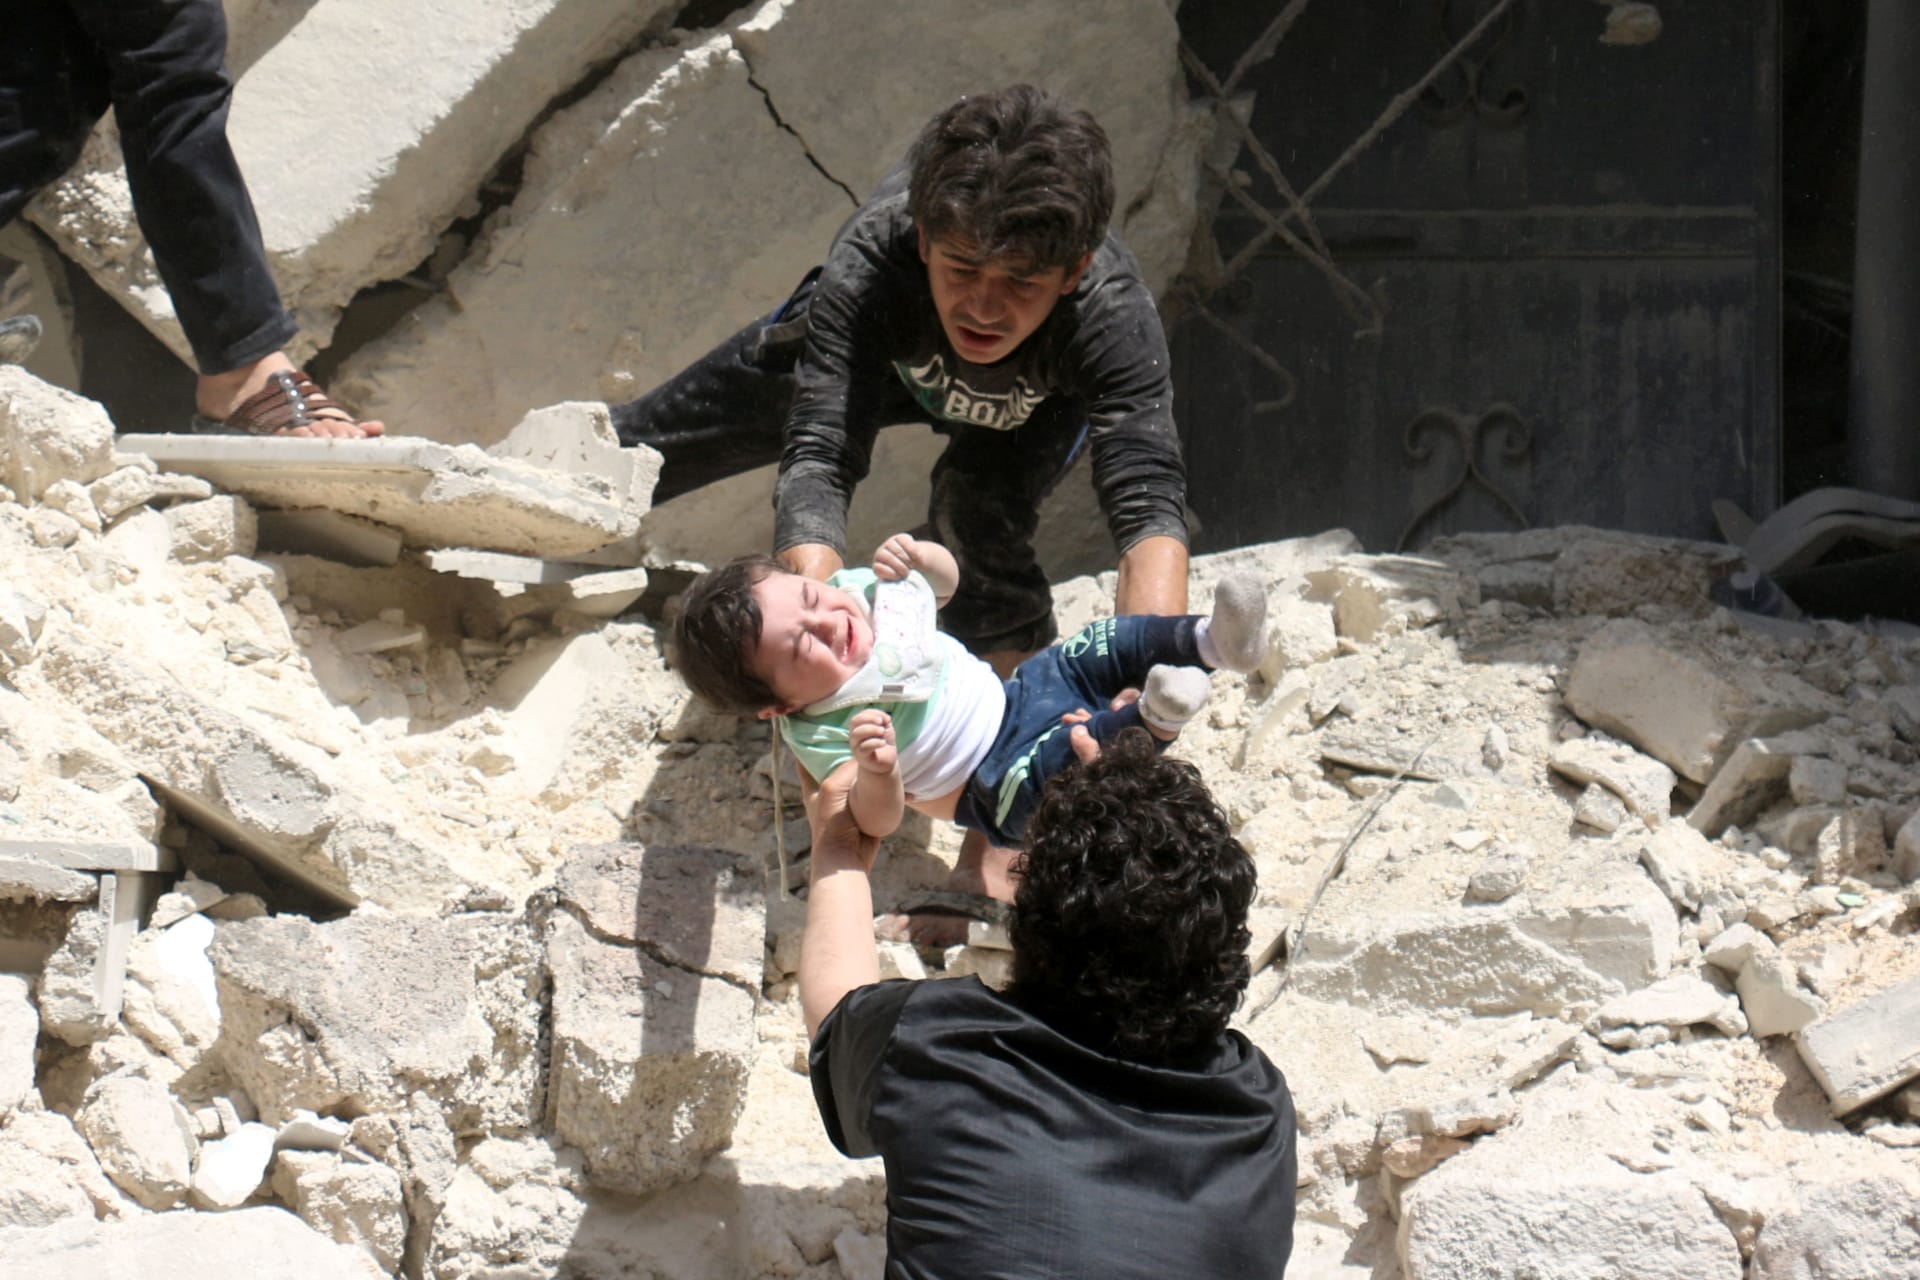 وسط التنديد الدولي بـ"مجازر" حلب.. قتلى وجرحى إثر هجمات صاروخية تستهدف مستشفى آخر ومناطق سكنية بالمدينة السورية